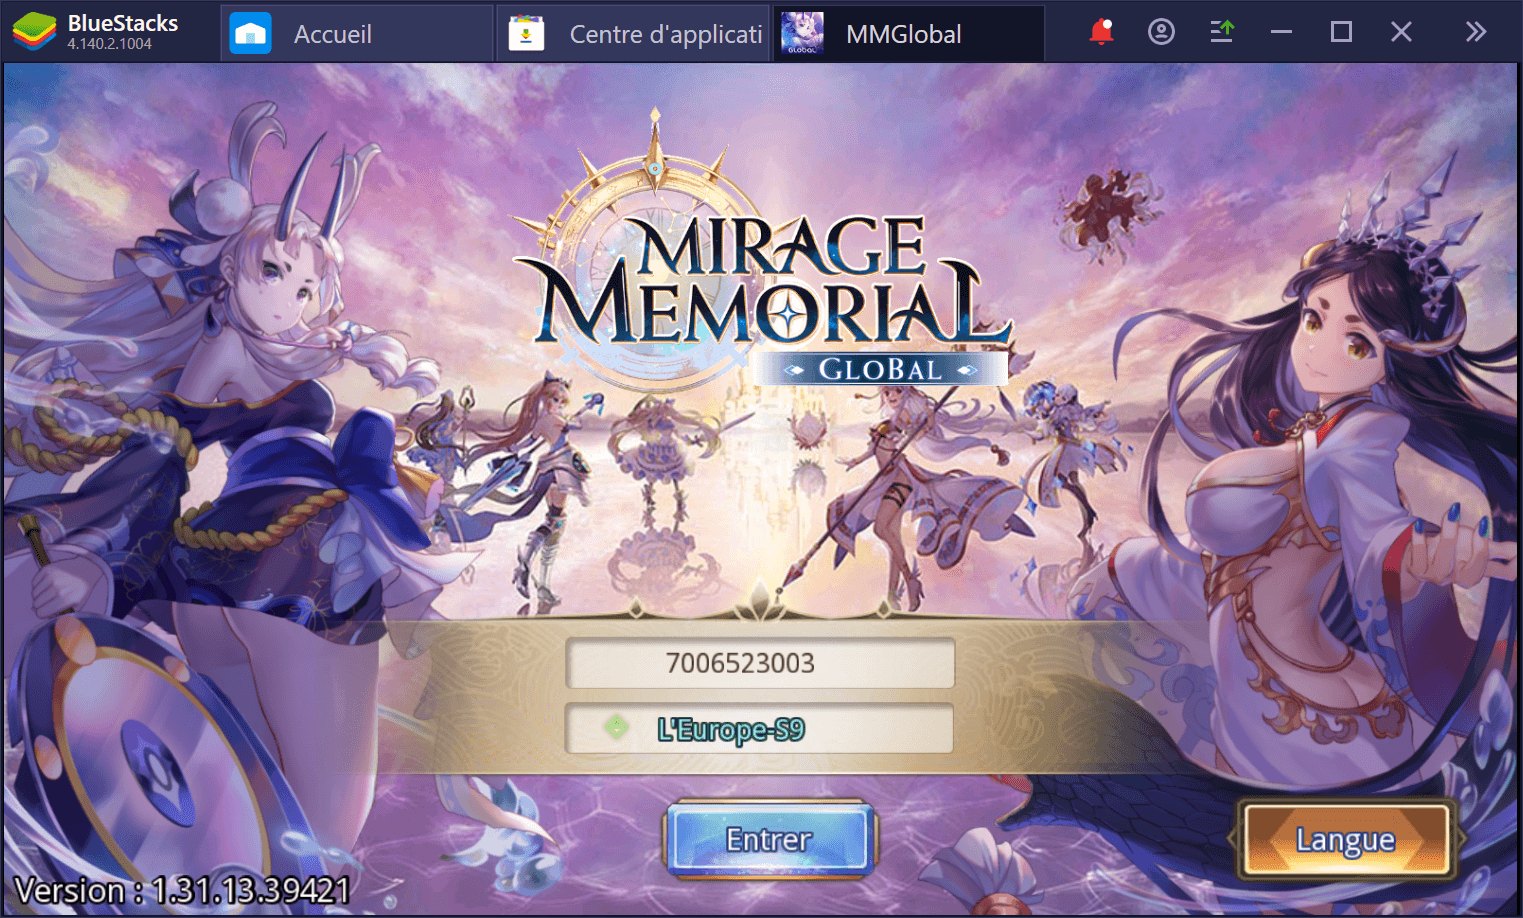 Profitez de Mirage Memorial Global sur PC avec BlueStacks